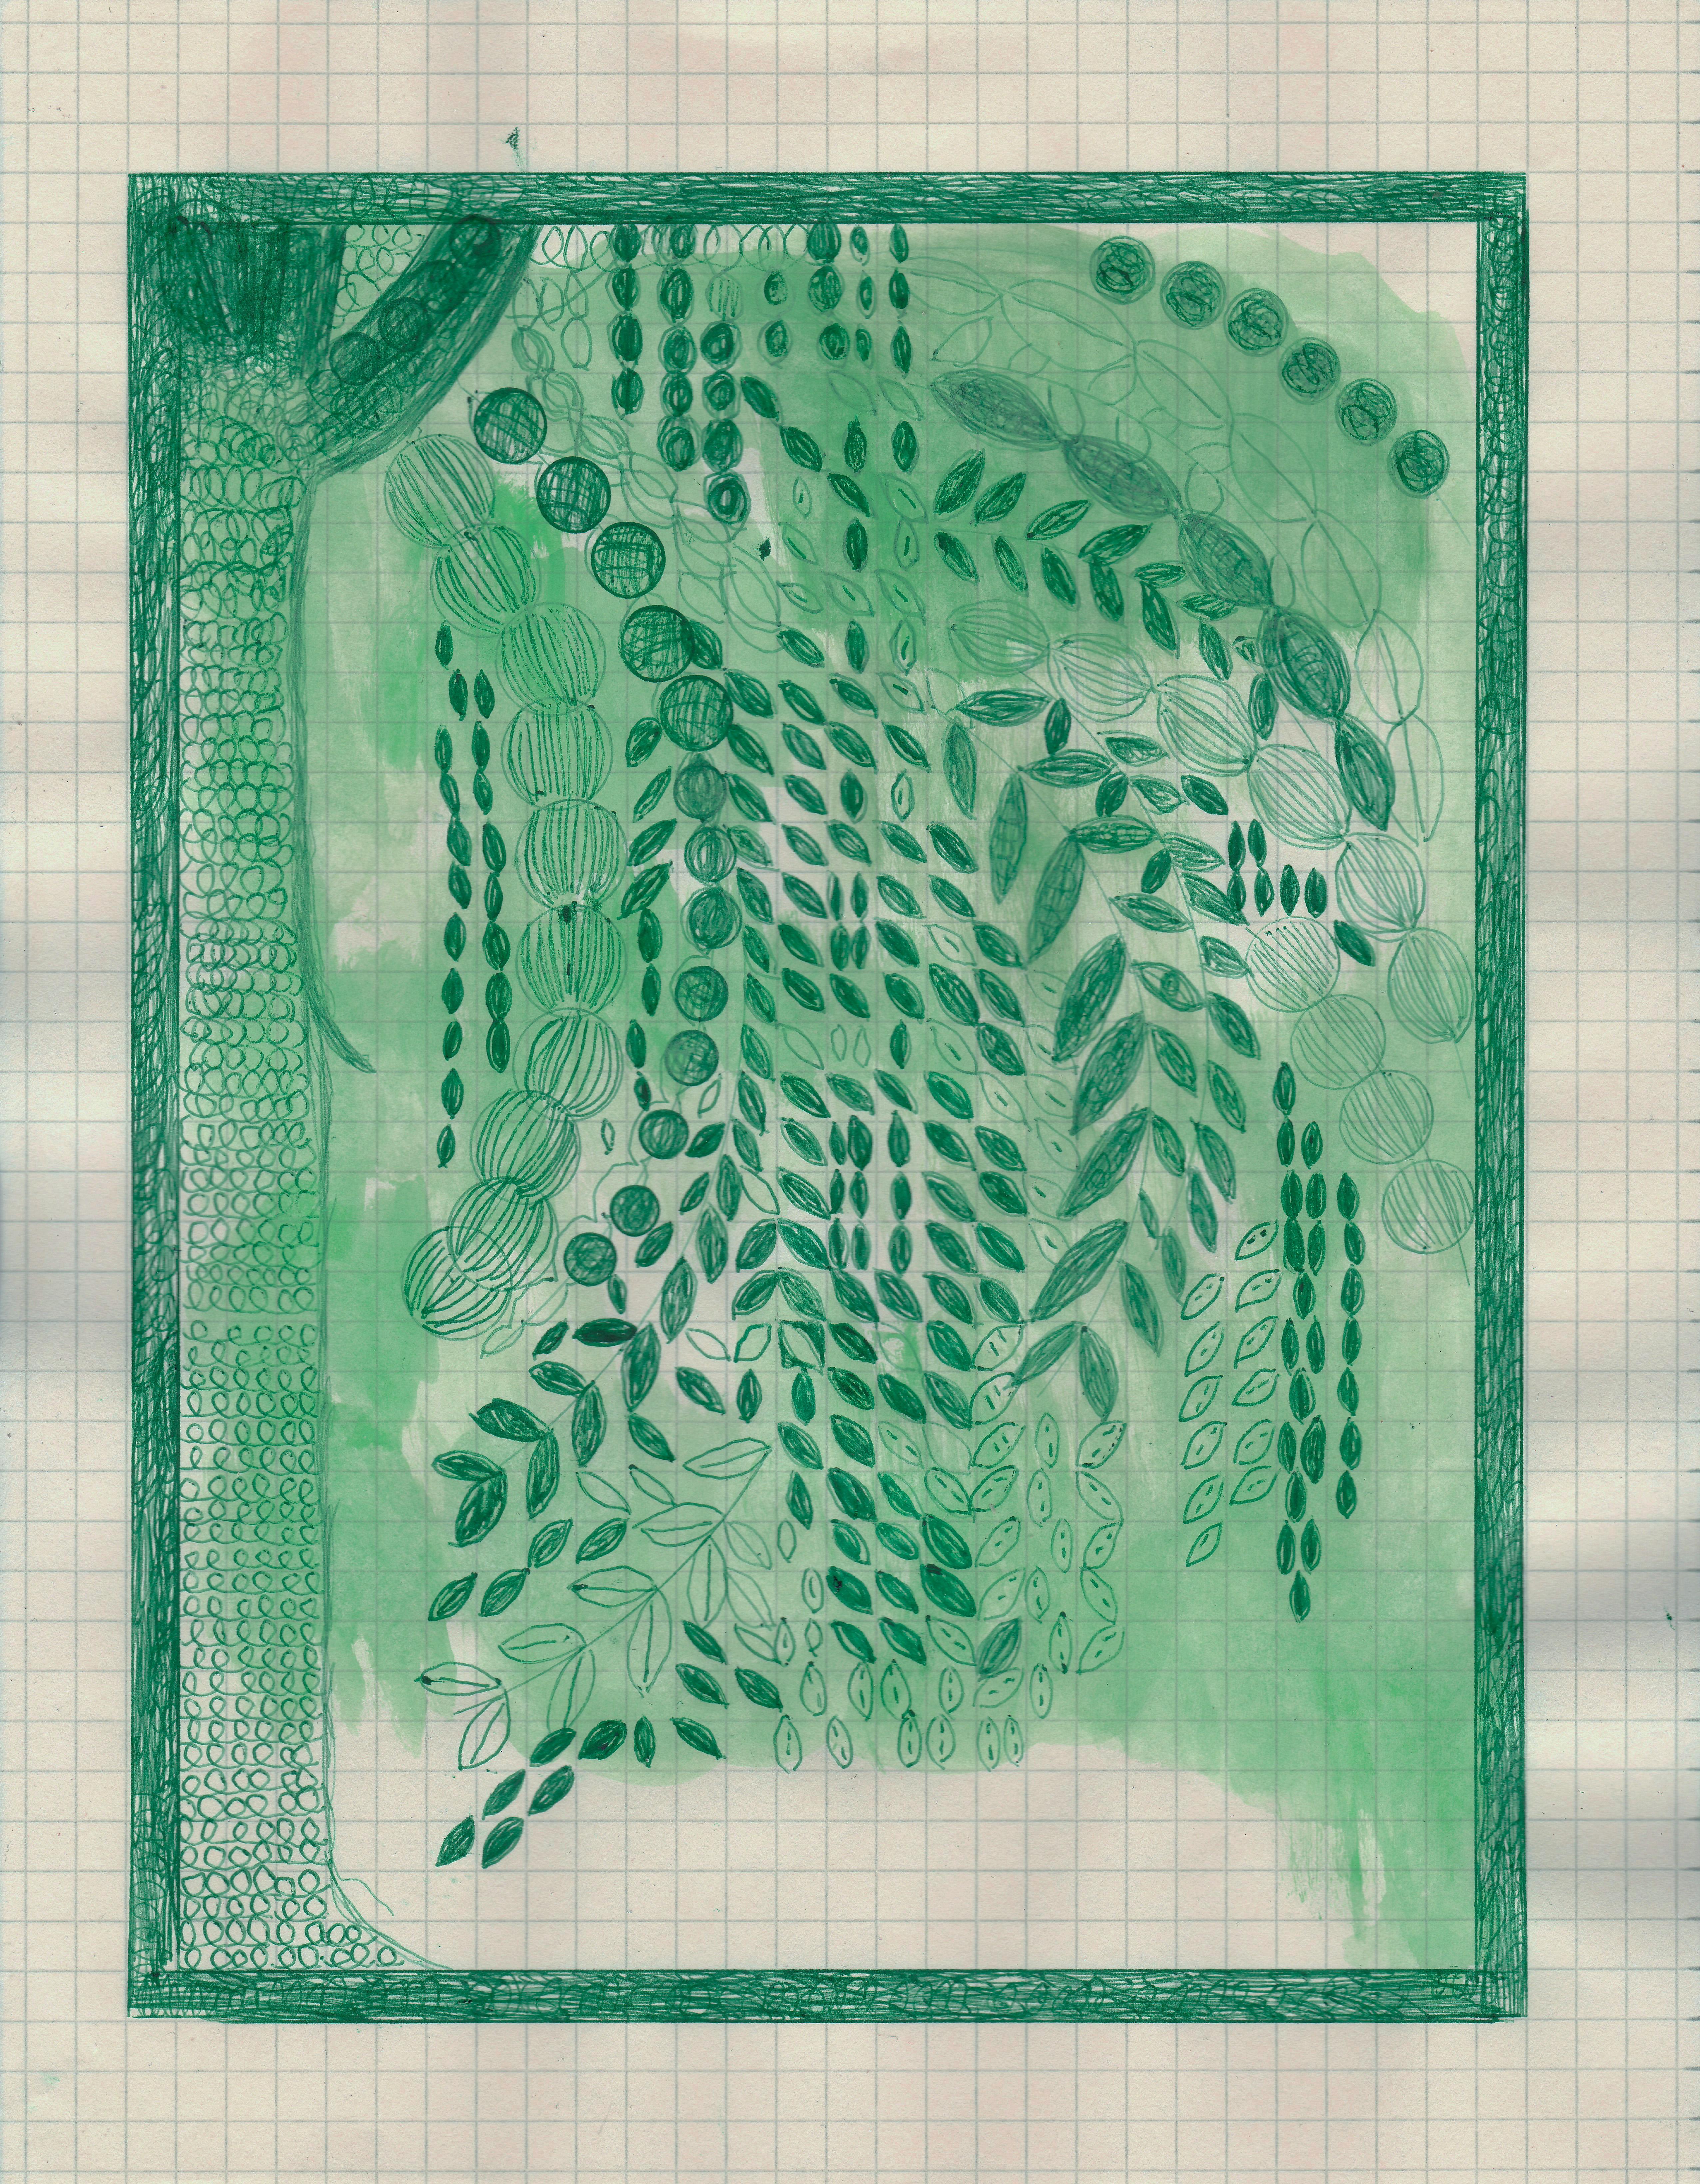 Caroline Blum Landscape Art - River Birch, ink drawing of green tree in backyard, work on paper